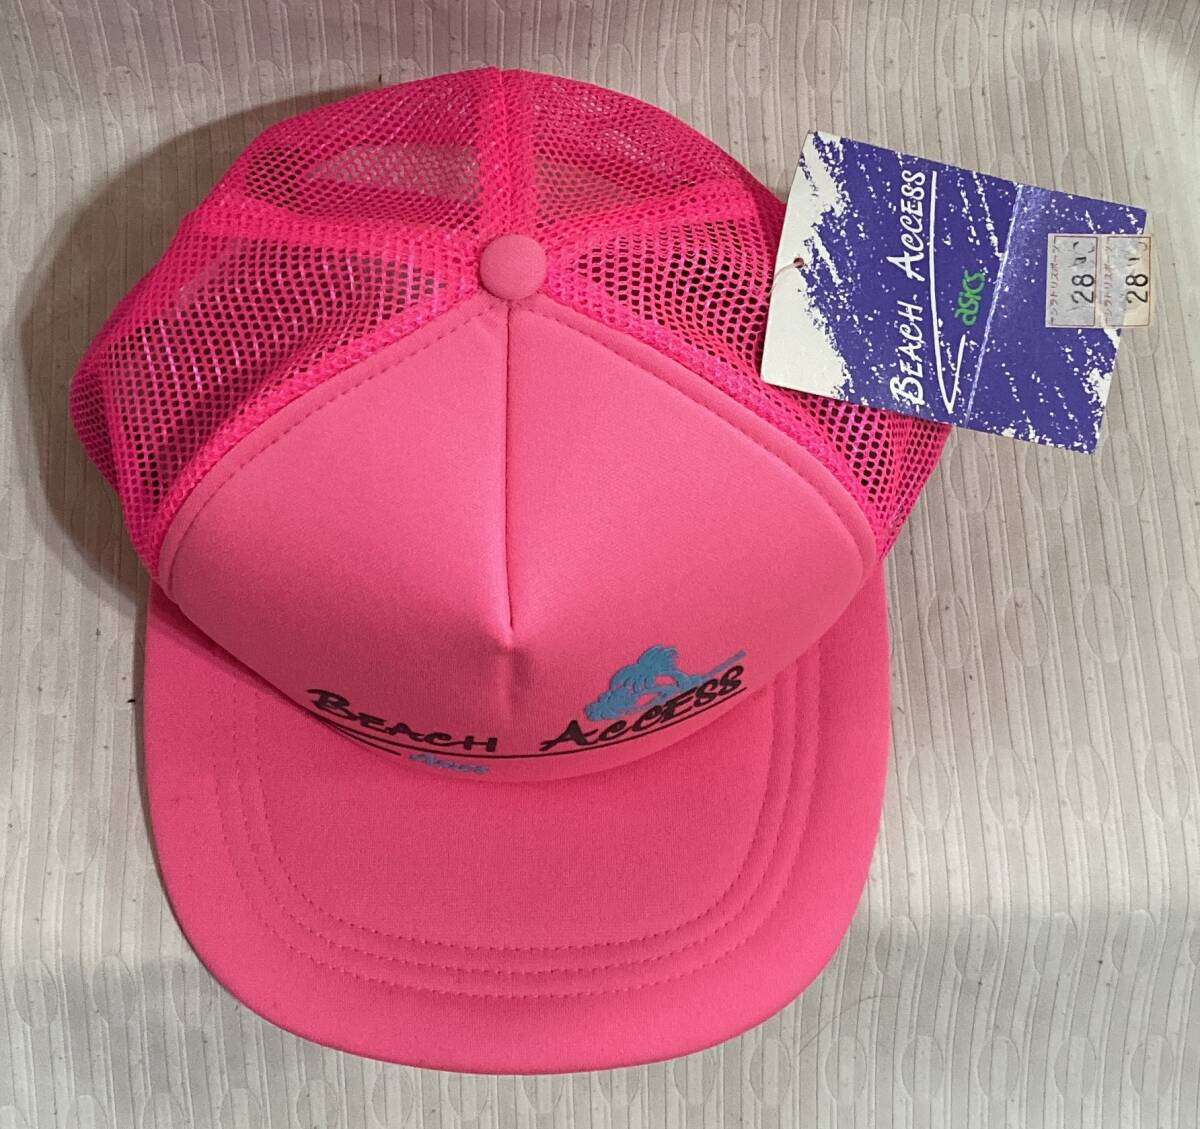 キャップ 帽子 アシックス/asics フリーサイズ 約56-59cm BEACH ACCESS ピンク色のスポーツキャップ 3080円品-未使用品_画像3